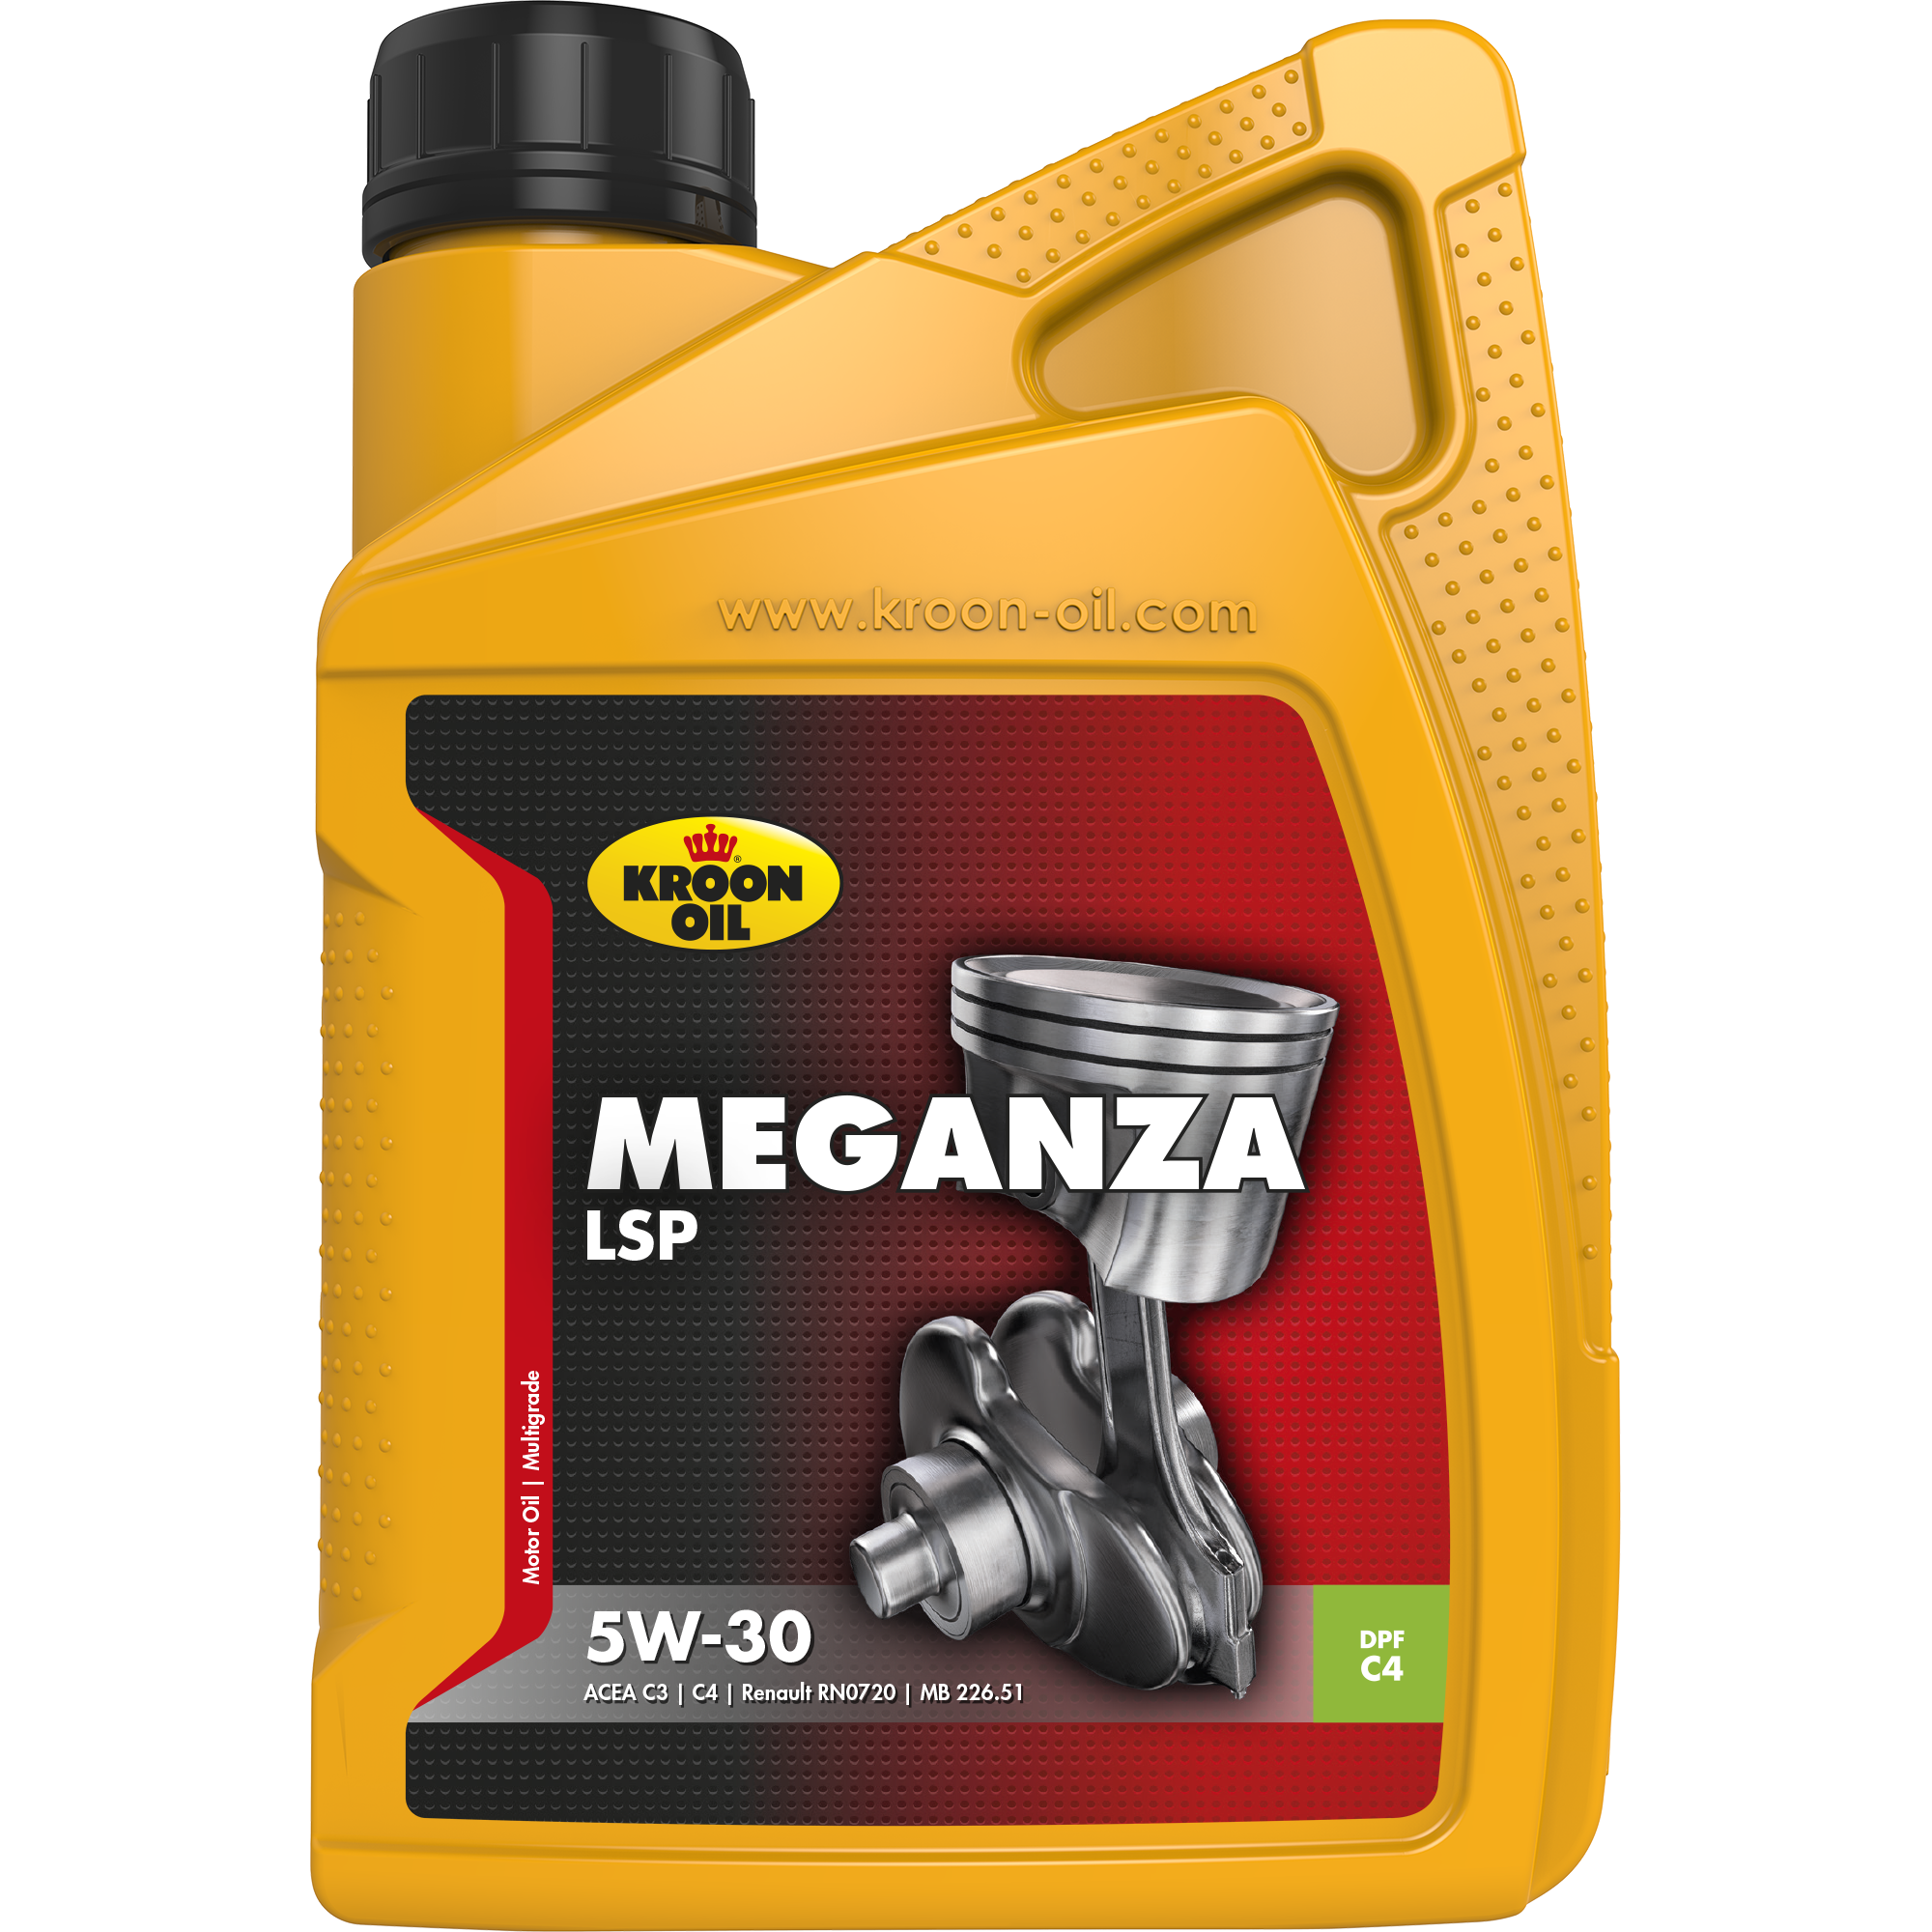 Kroon-Oil Meganza LSP 5W-30, 1 lt